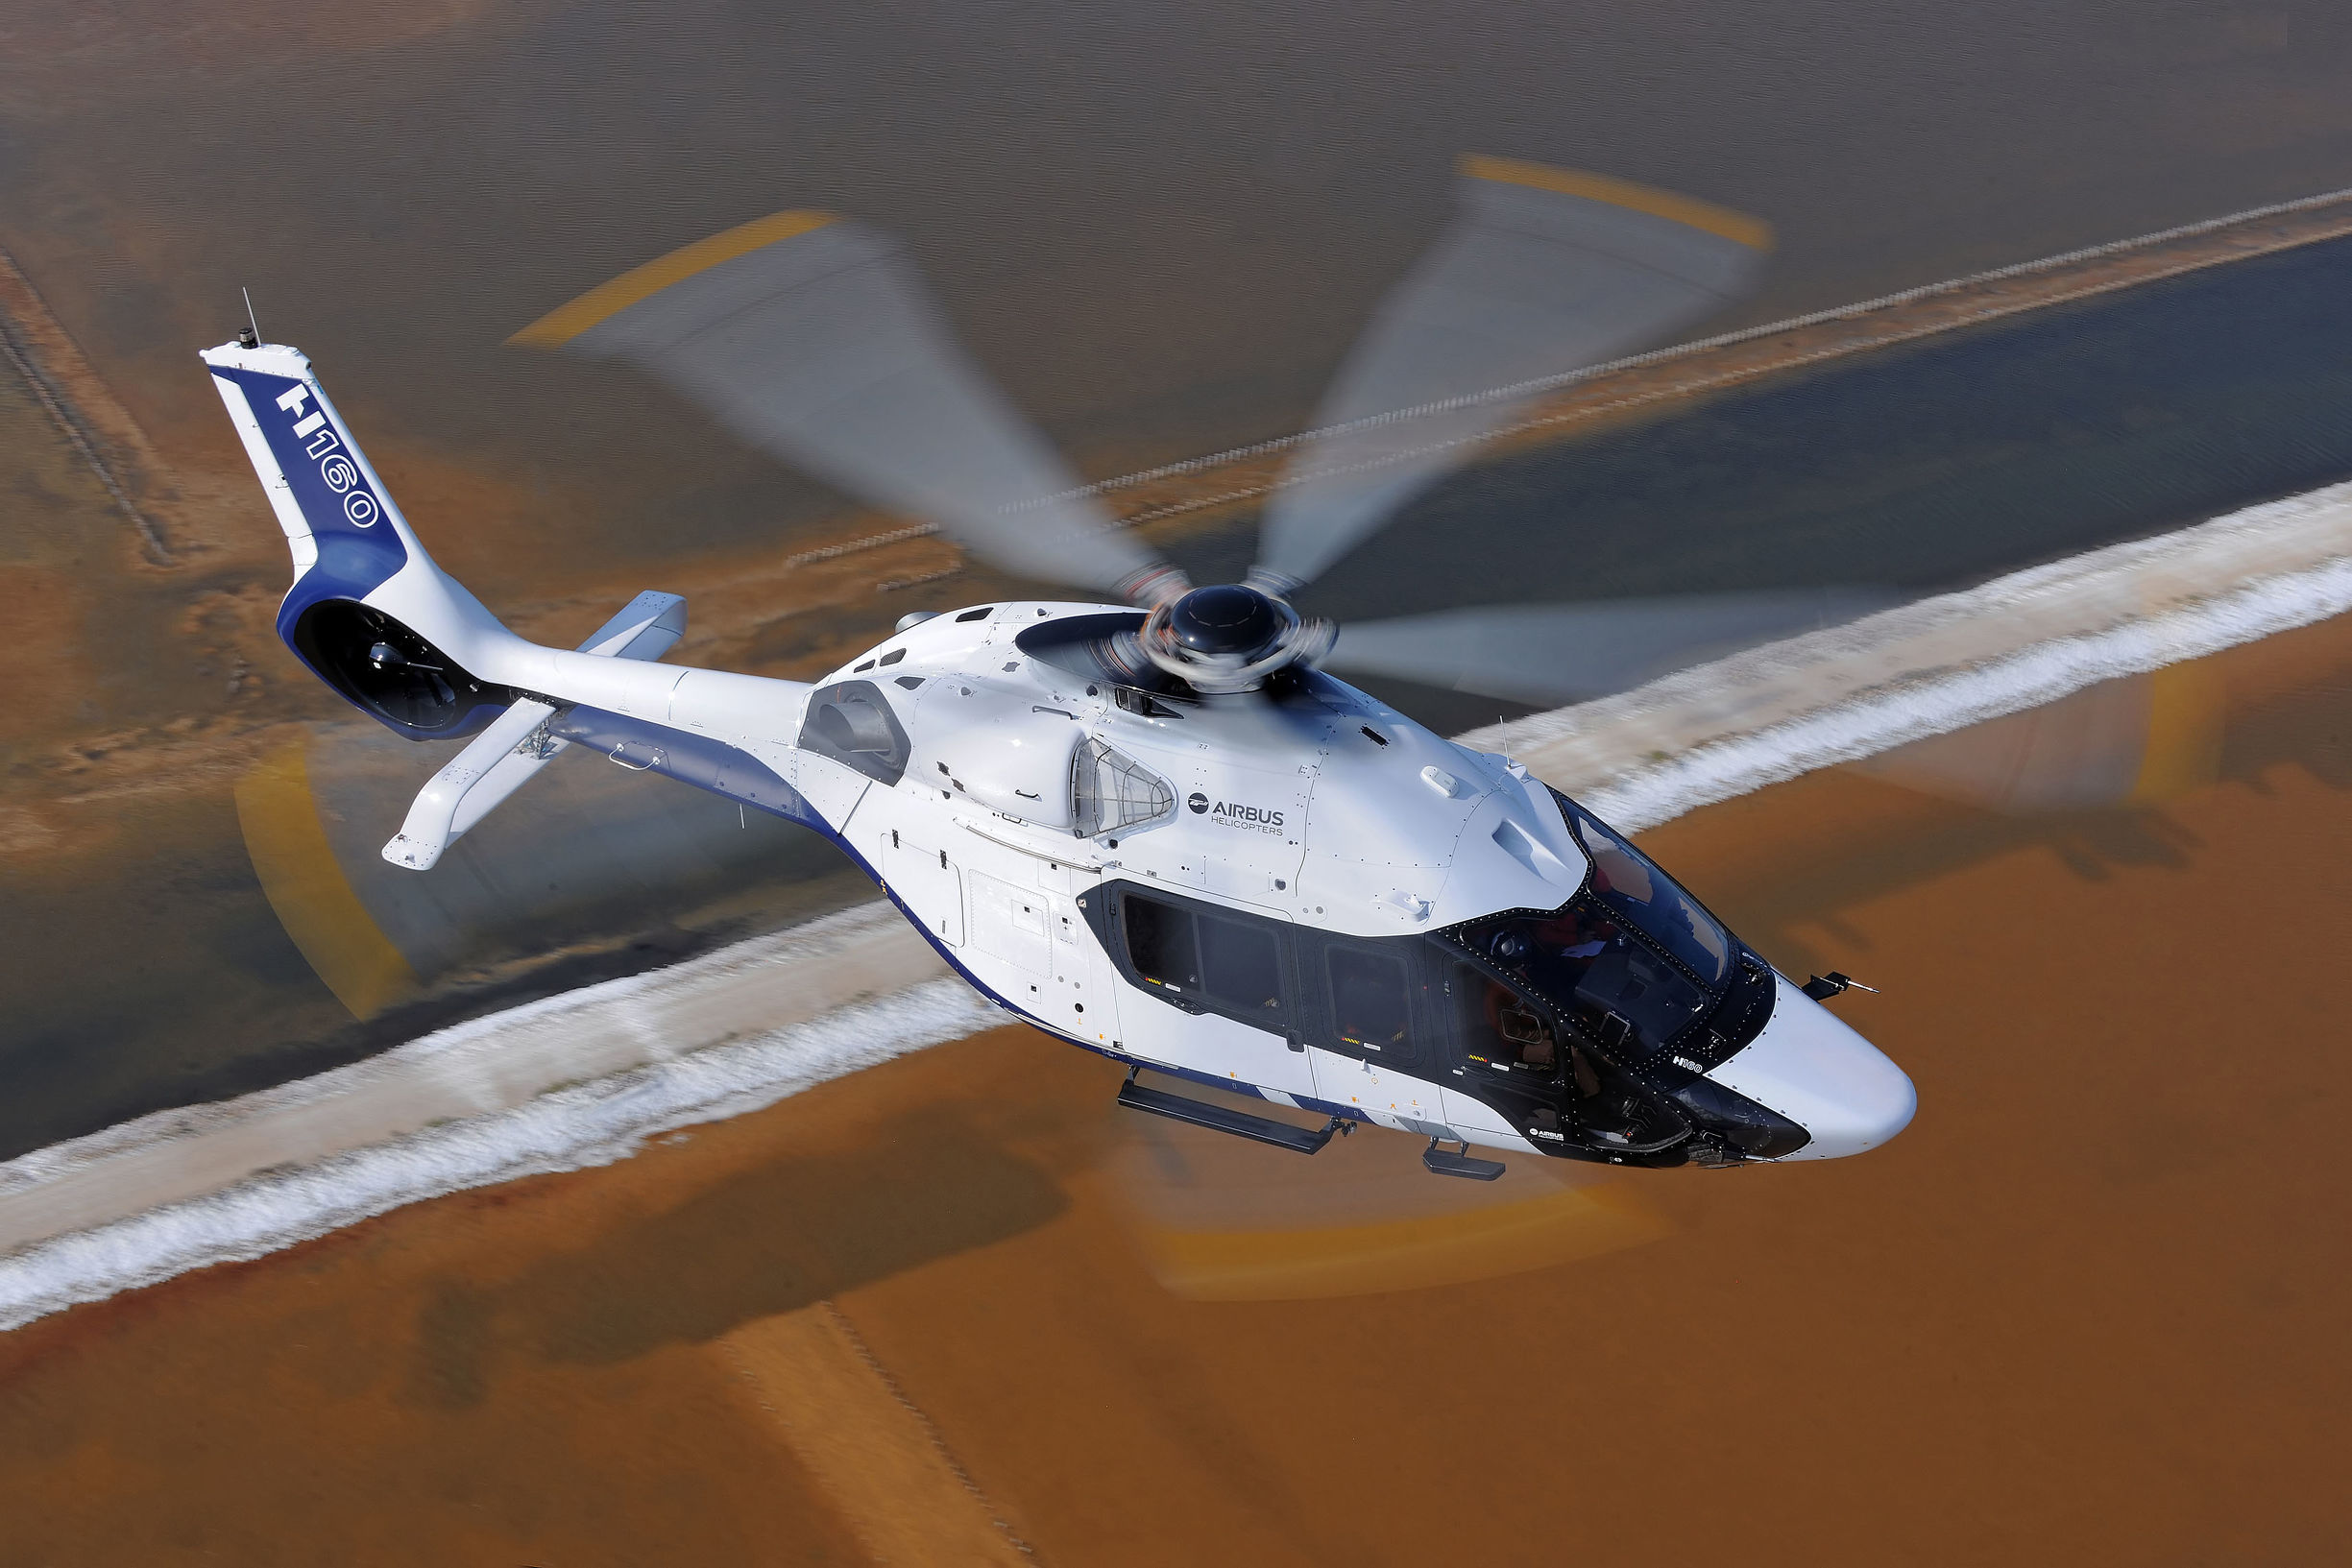 空客h160,空客直升机提供的资料显示,h160直升机属于5